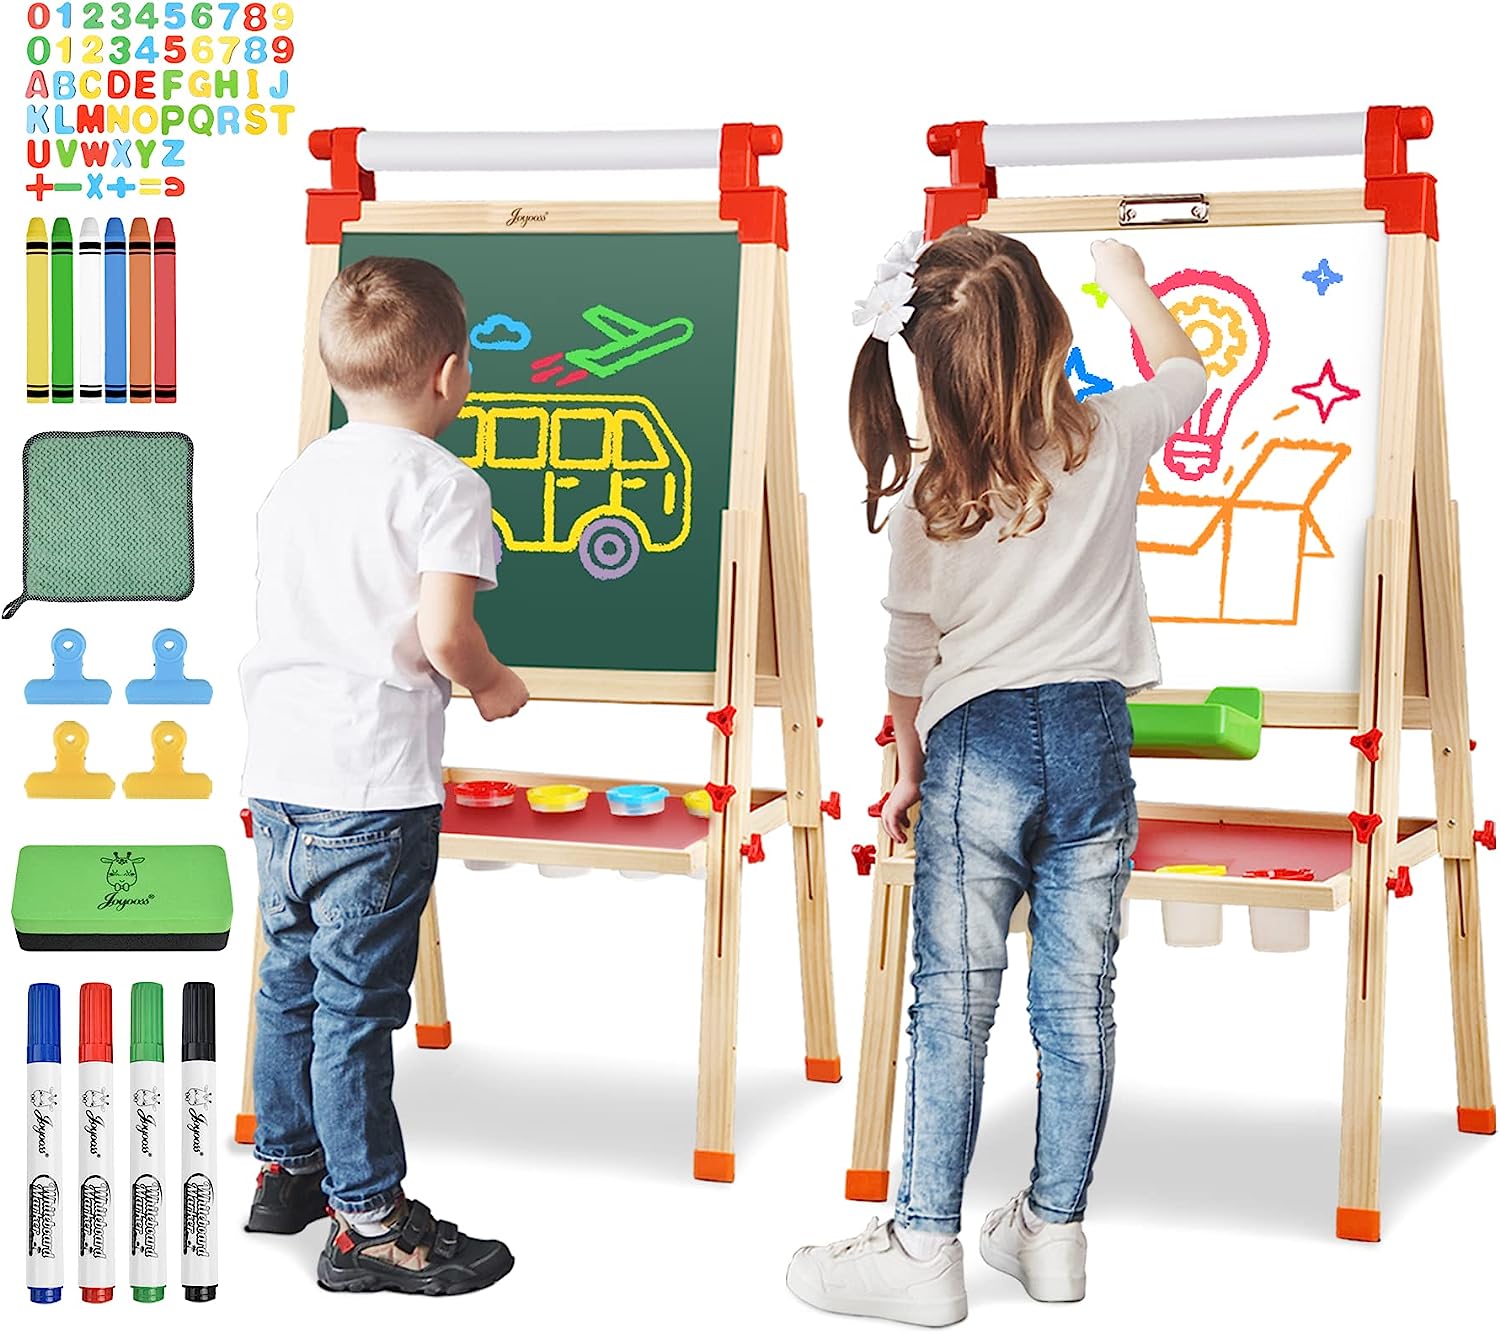 Joyooss Children Artist Easel, Adjustable Wooden Art Kids Easel with Magnetic Whiteboard & Chalkbaord, Easel for Kids with Paper Roll & Bonus Kids Art Supplies